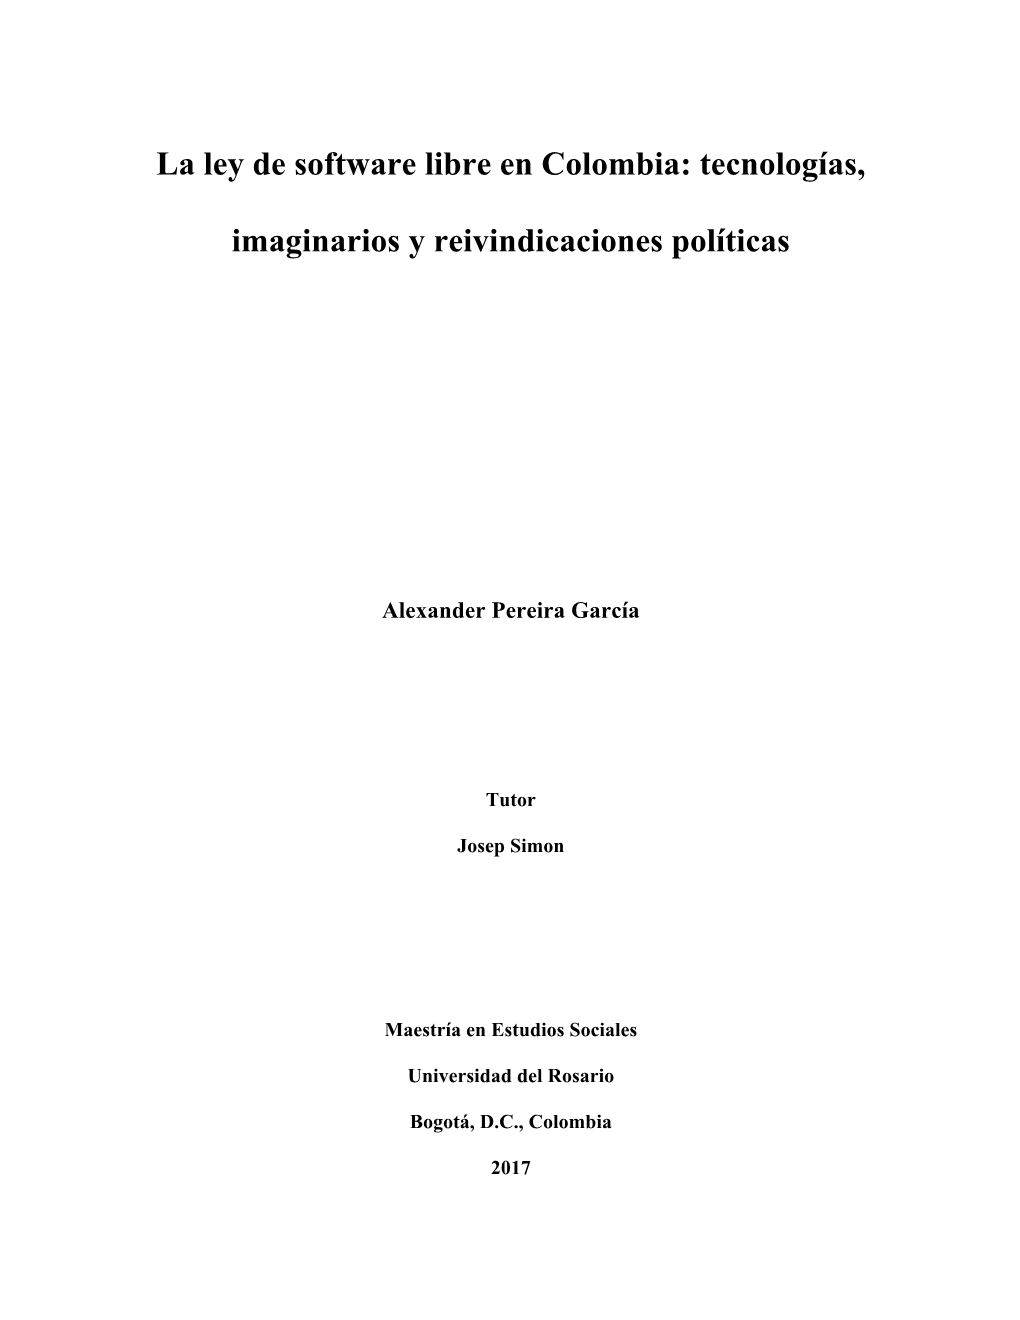 La Ley De Software Libre En Colombia: Tecnologías, Imaginarios Y Reivindicaciones Políticas 5